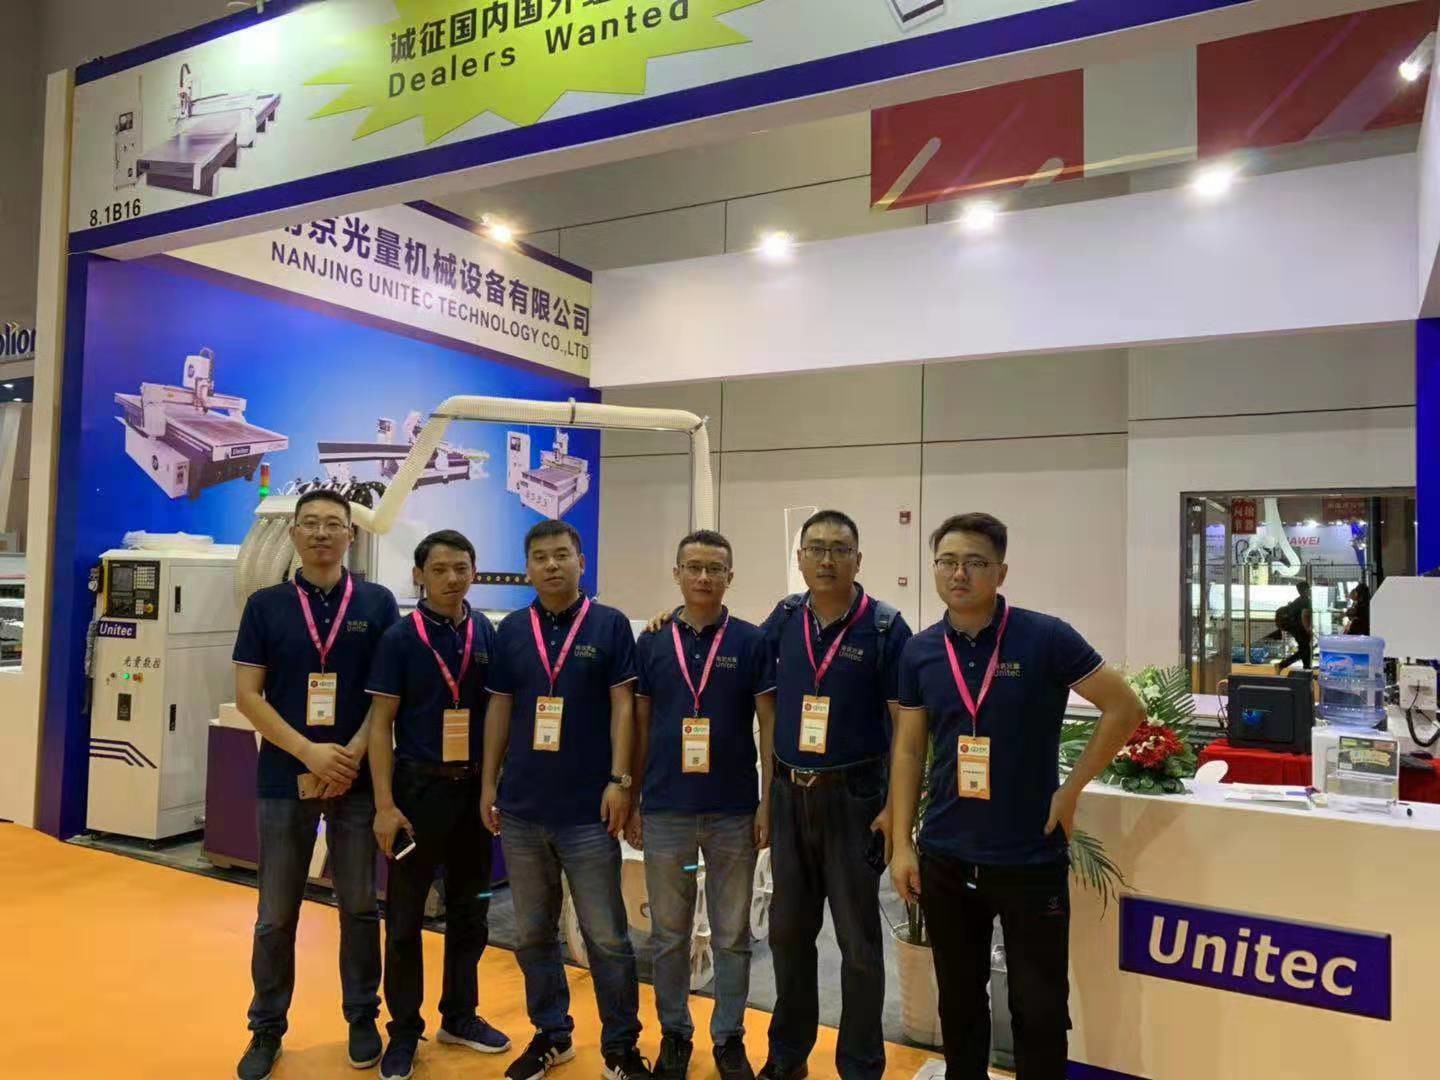 الصين Nanjing Unitec Technology Co., Ltd. ملف الشركة